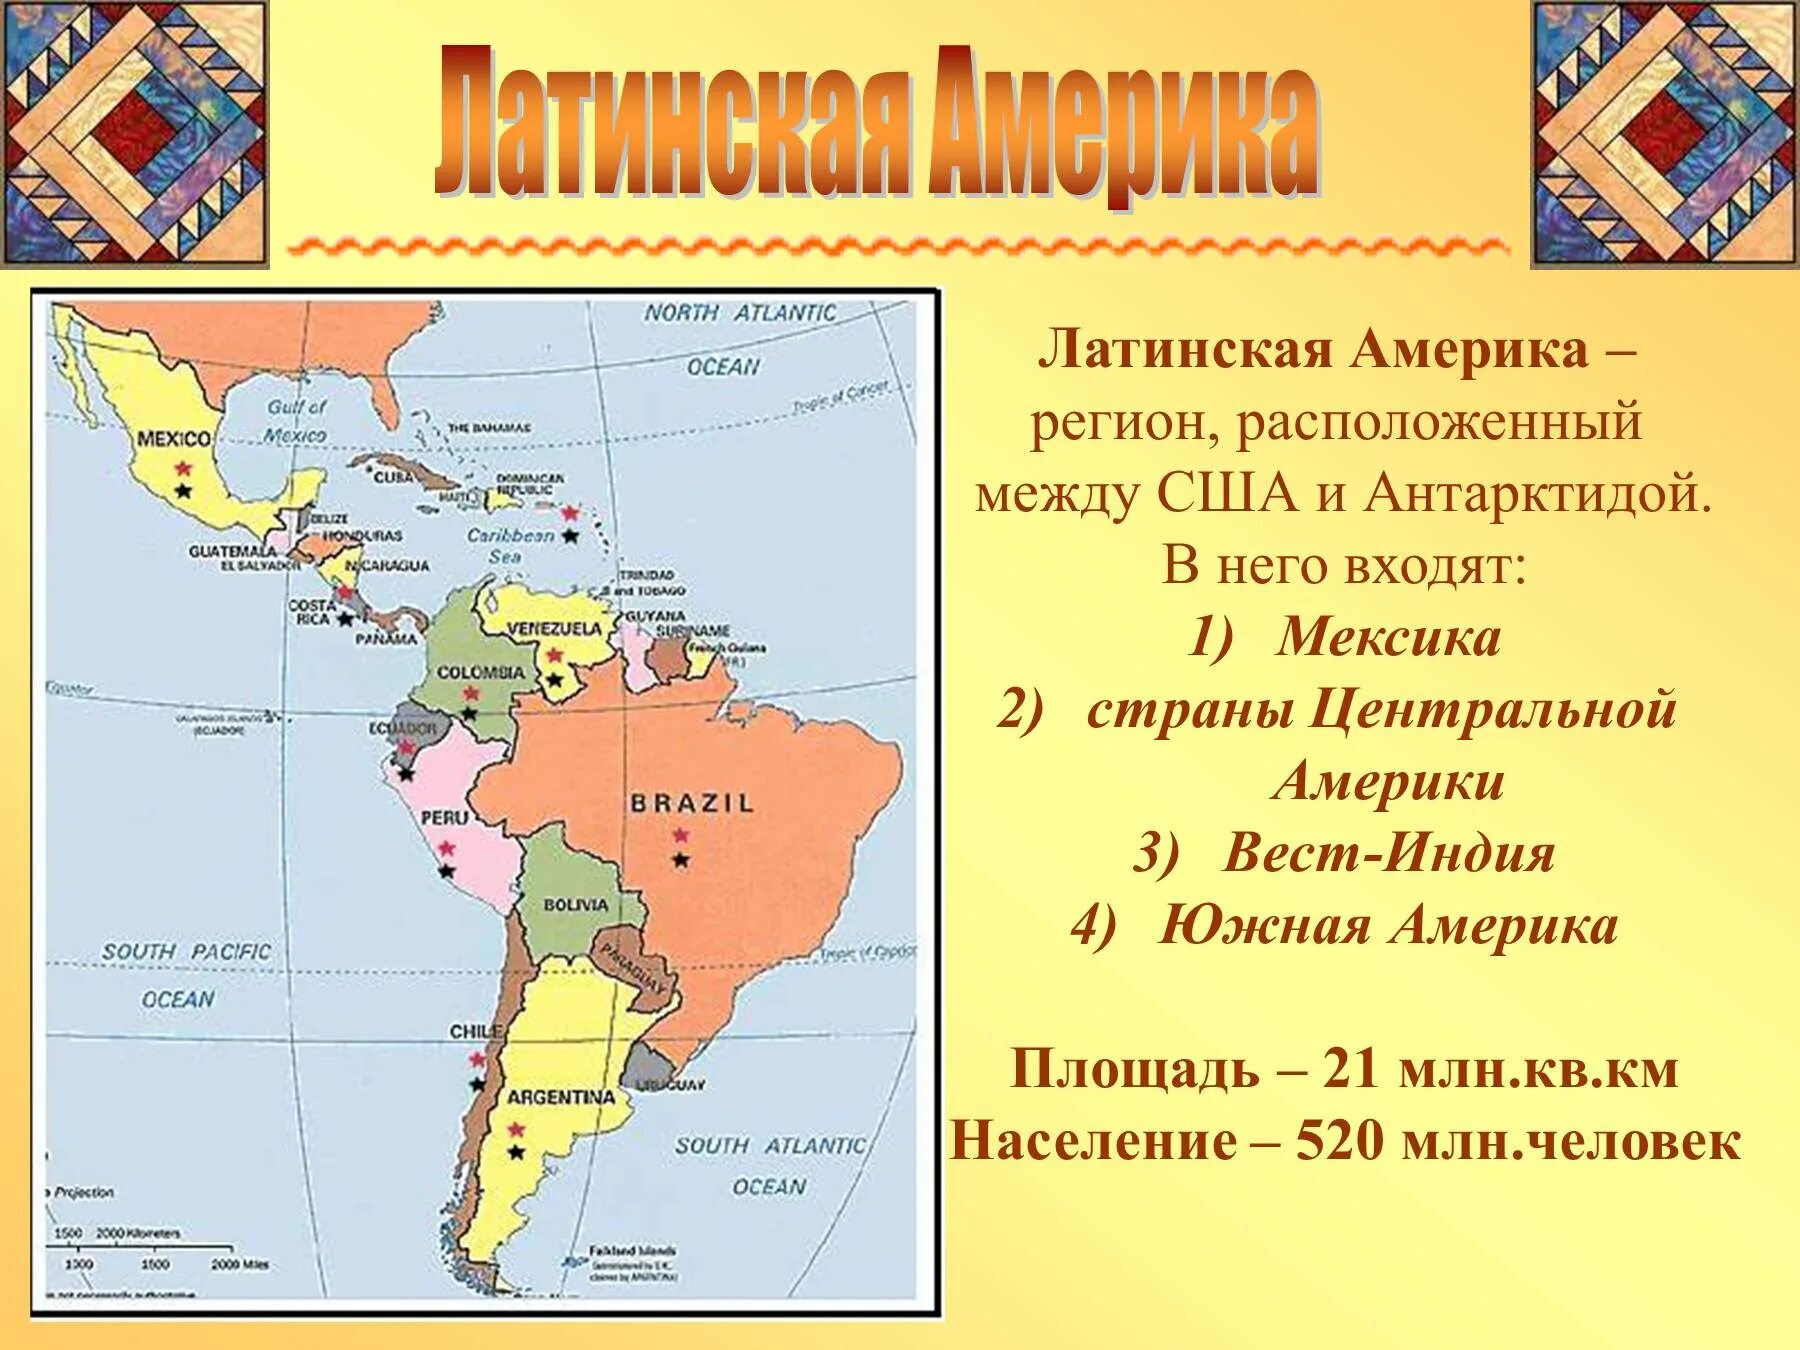 Страна субрегион столица. Политическая карта Латинской Америки субрегионы. Состав Латинской Америки карта. Государства на территории Латинской Америки. Границы всех государств Латинской Америки и их столицы на карте.